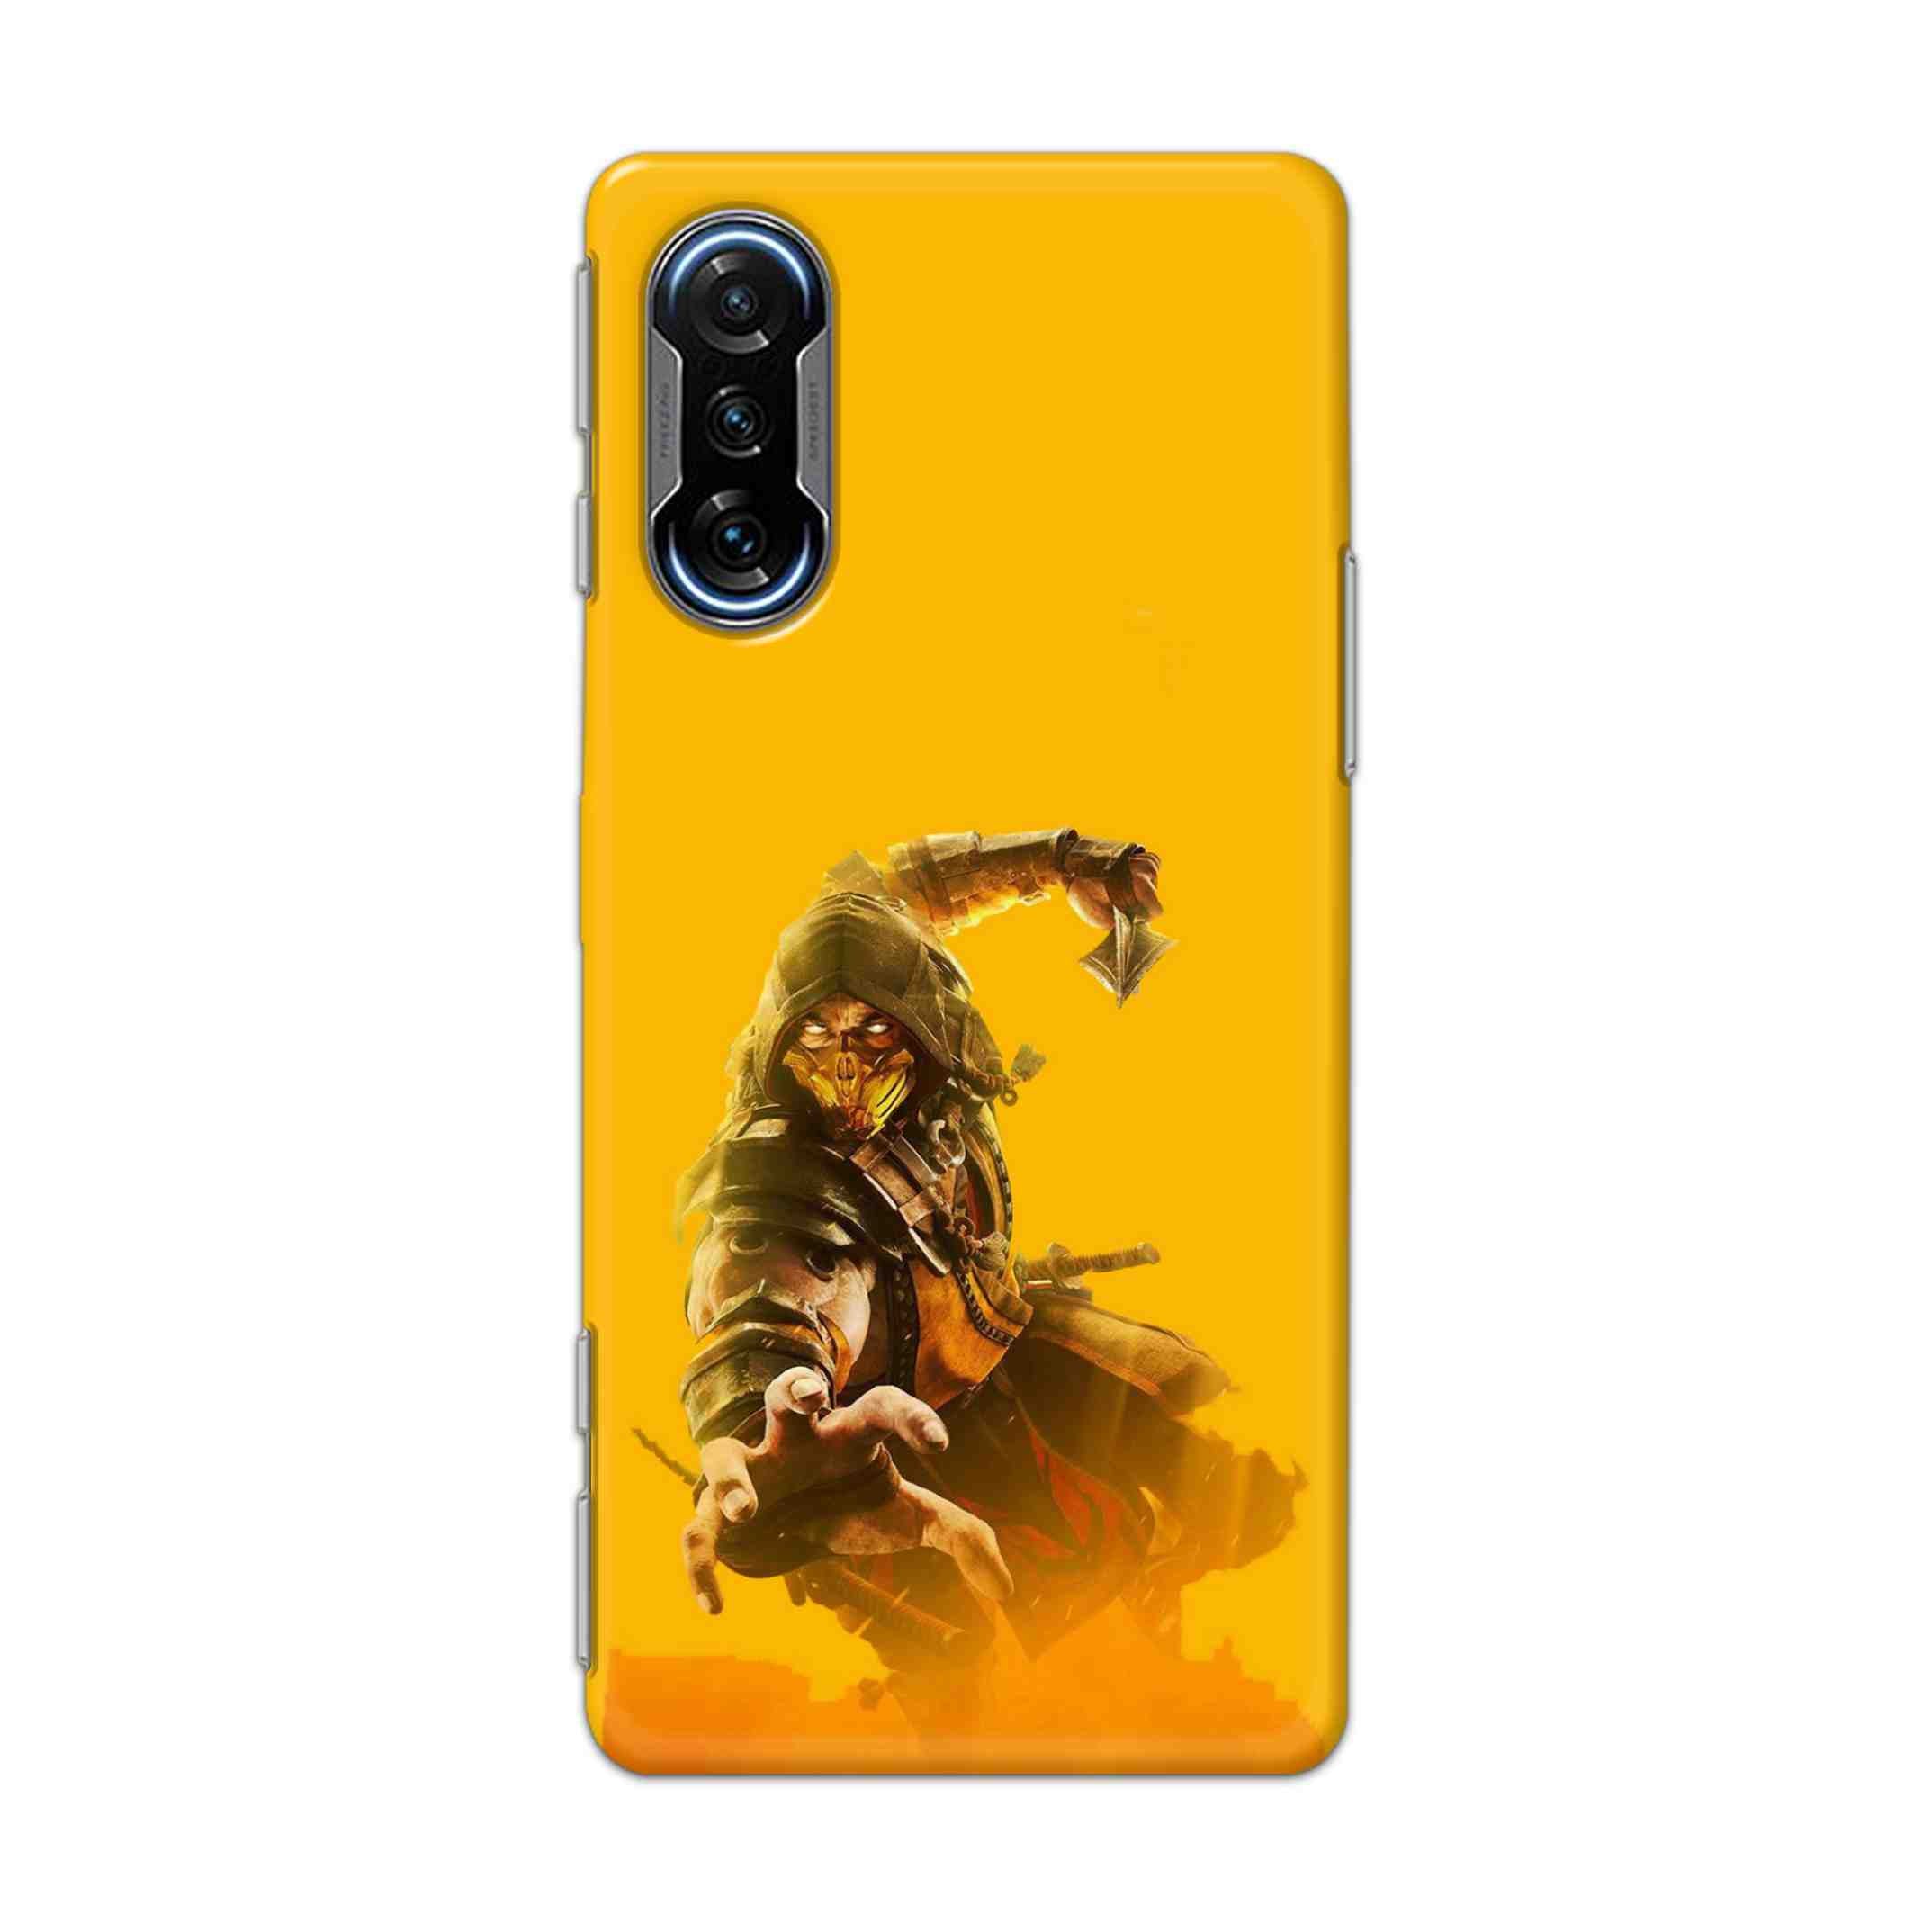 Buy Mortal Kombat Hard Back Mobile Phone Case Cover For Poco F3 GT 5G Online